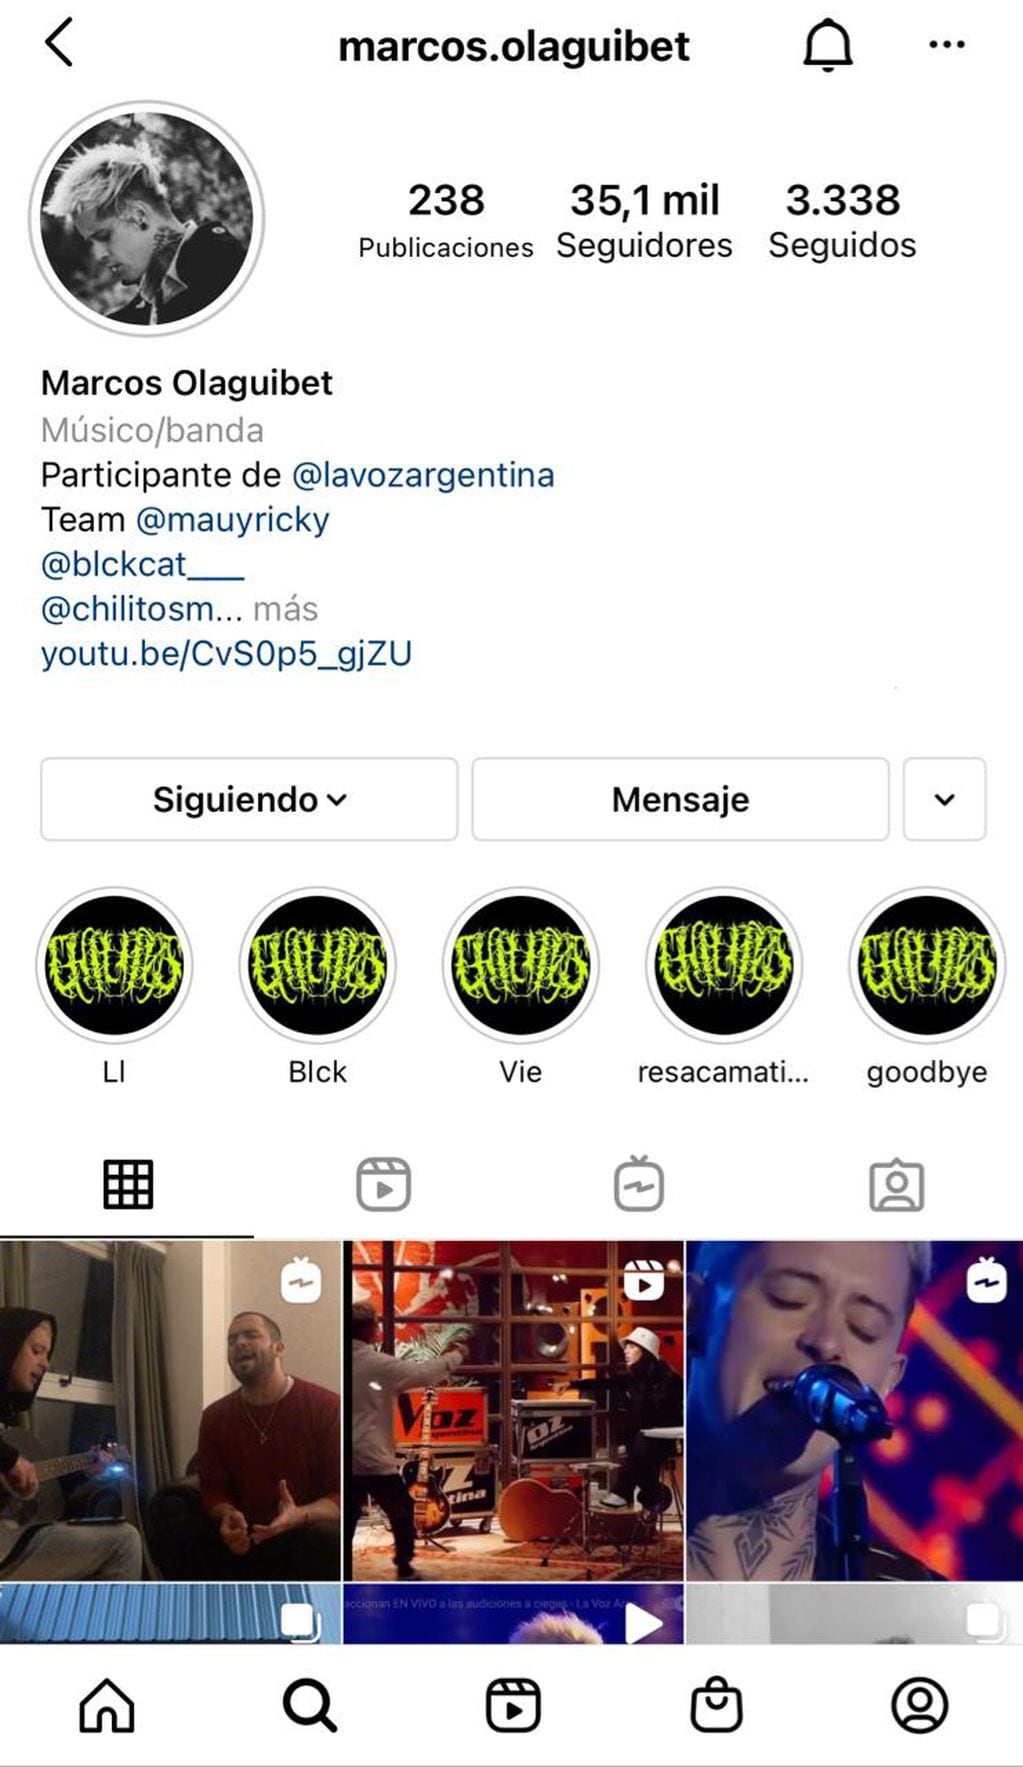 Marcos Olaguibet, el más seguido de los mendocinos en Instagram. 